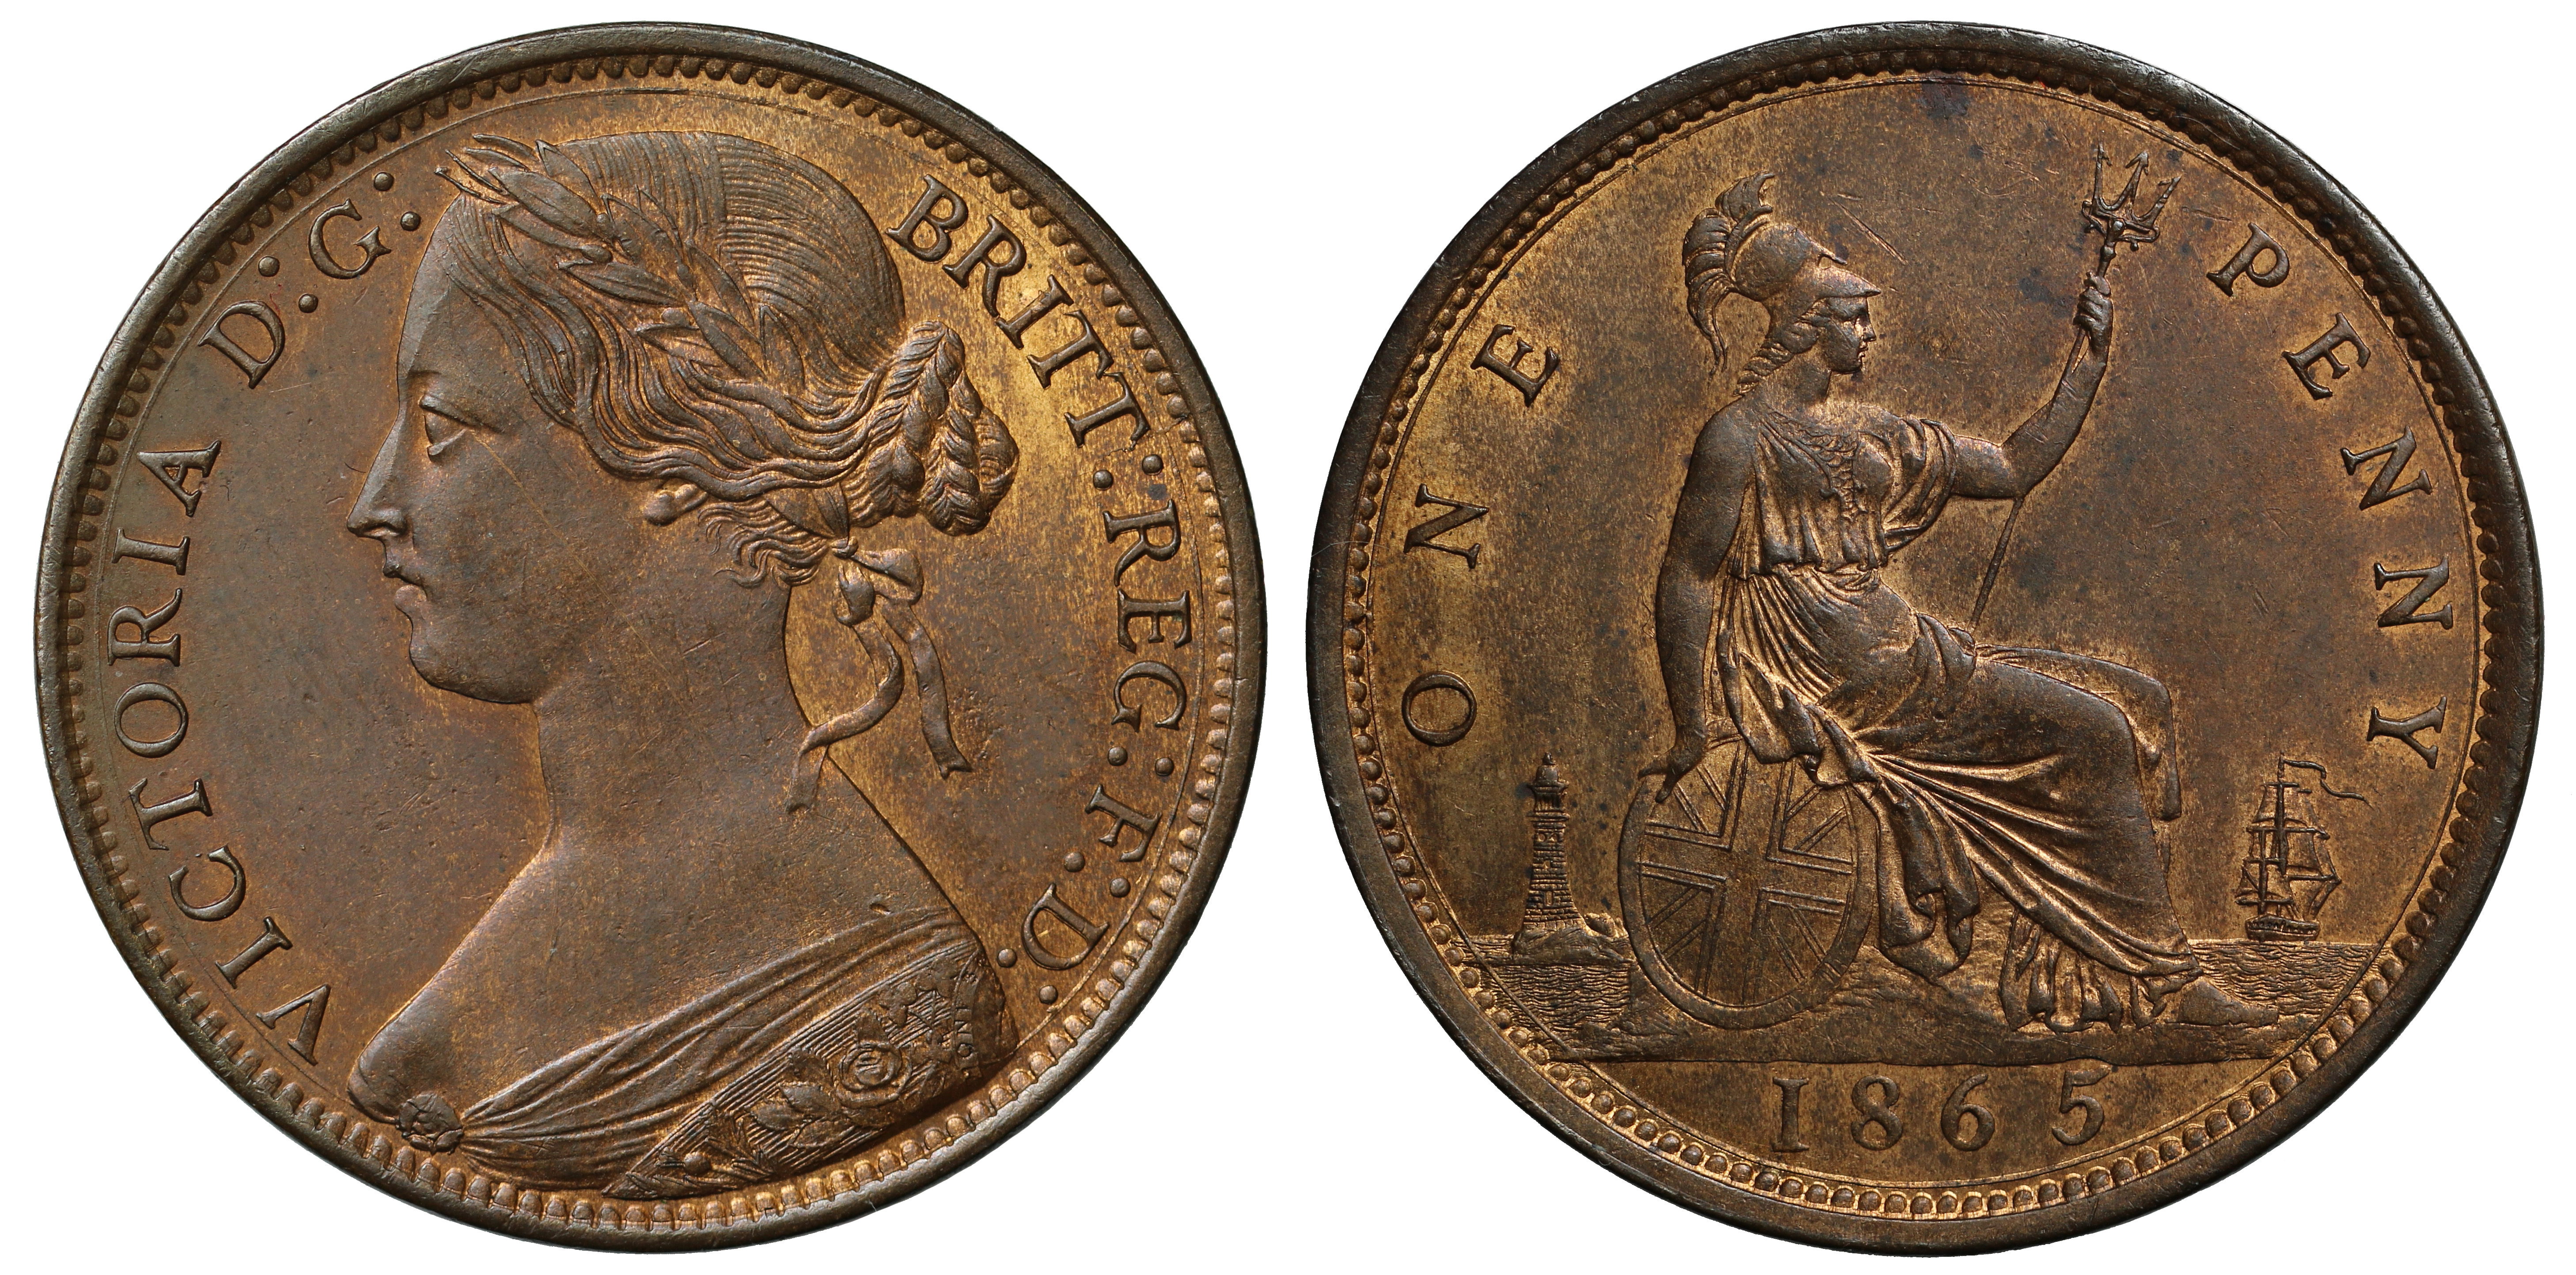 Victoria (1837-1901), Bronze Penny, 1865, laureate "bun" type bust left, no signature below bust,